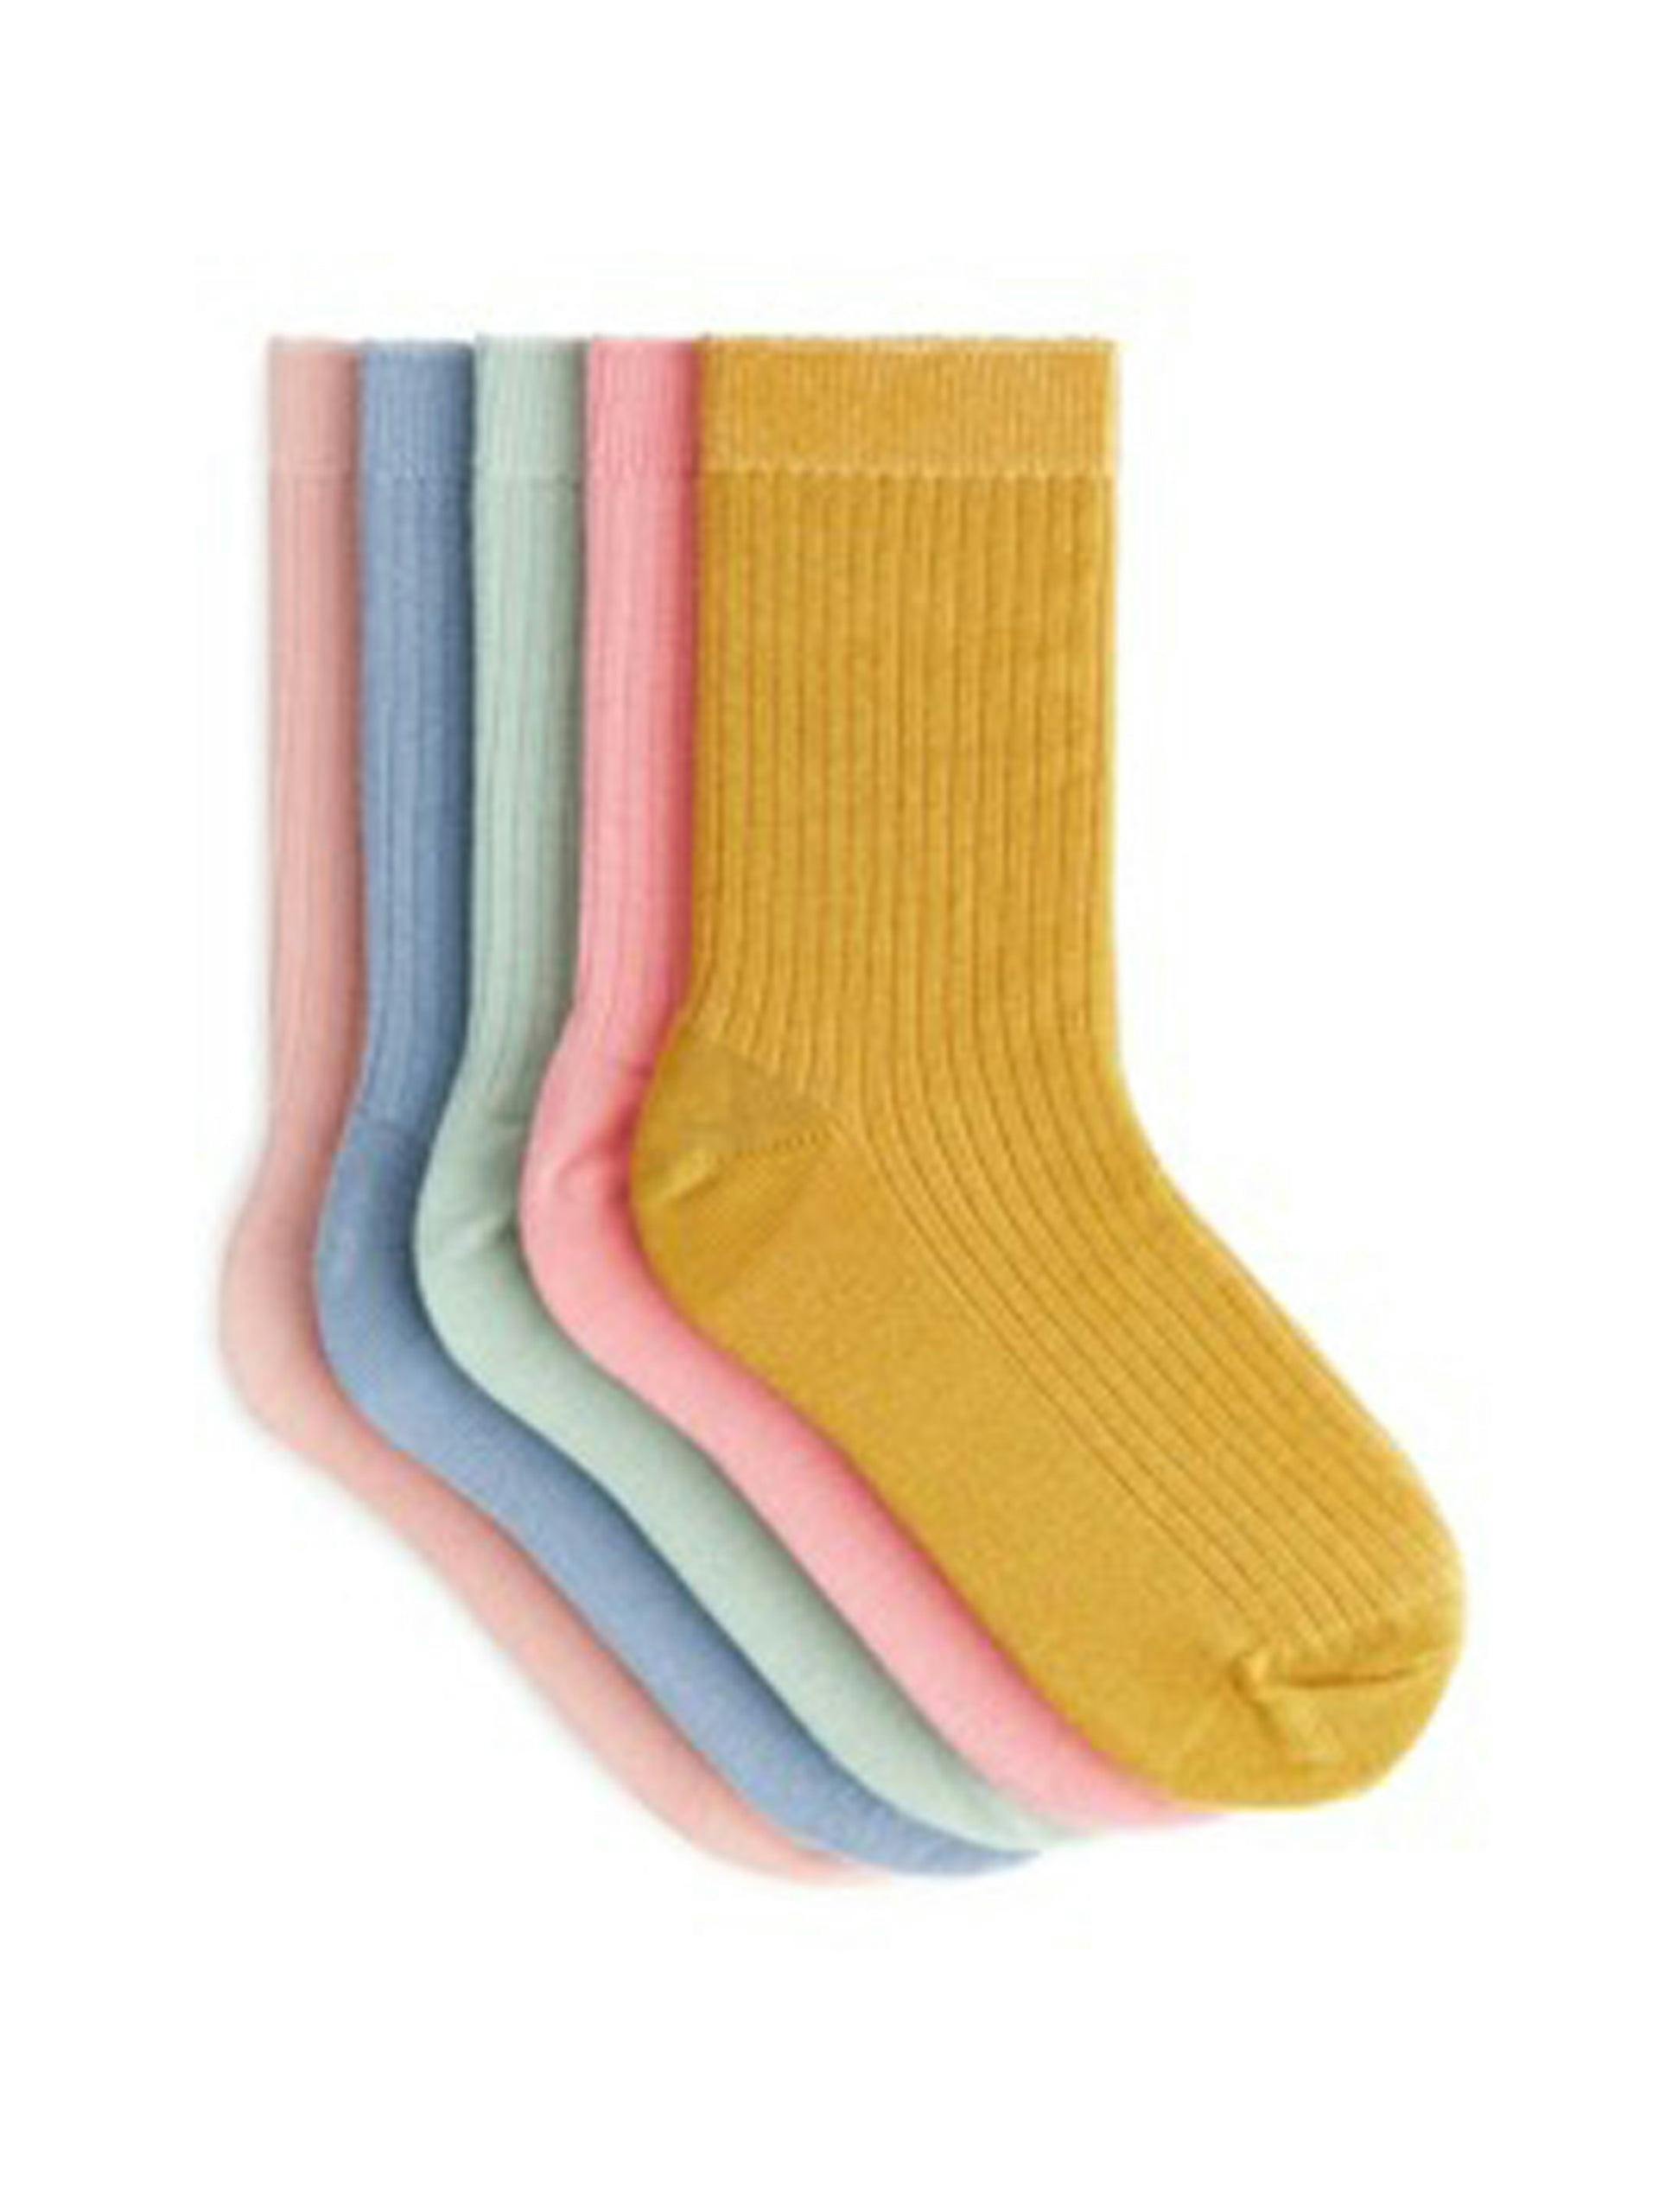 Colourful rib knit socks